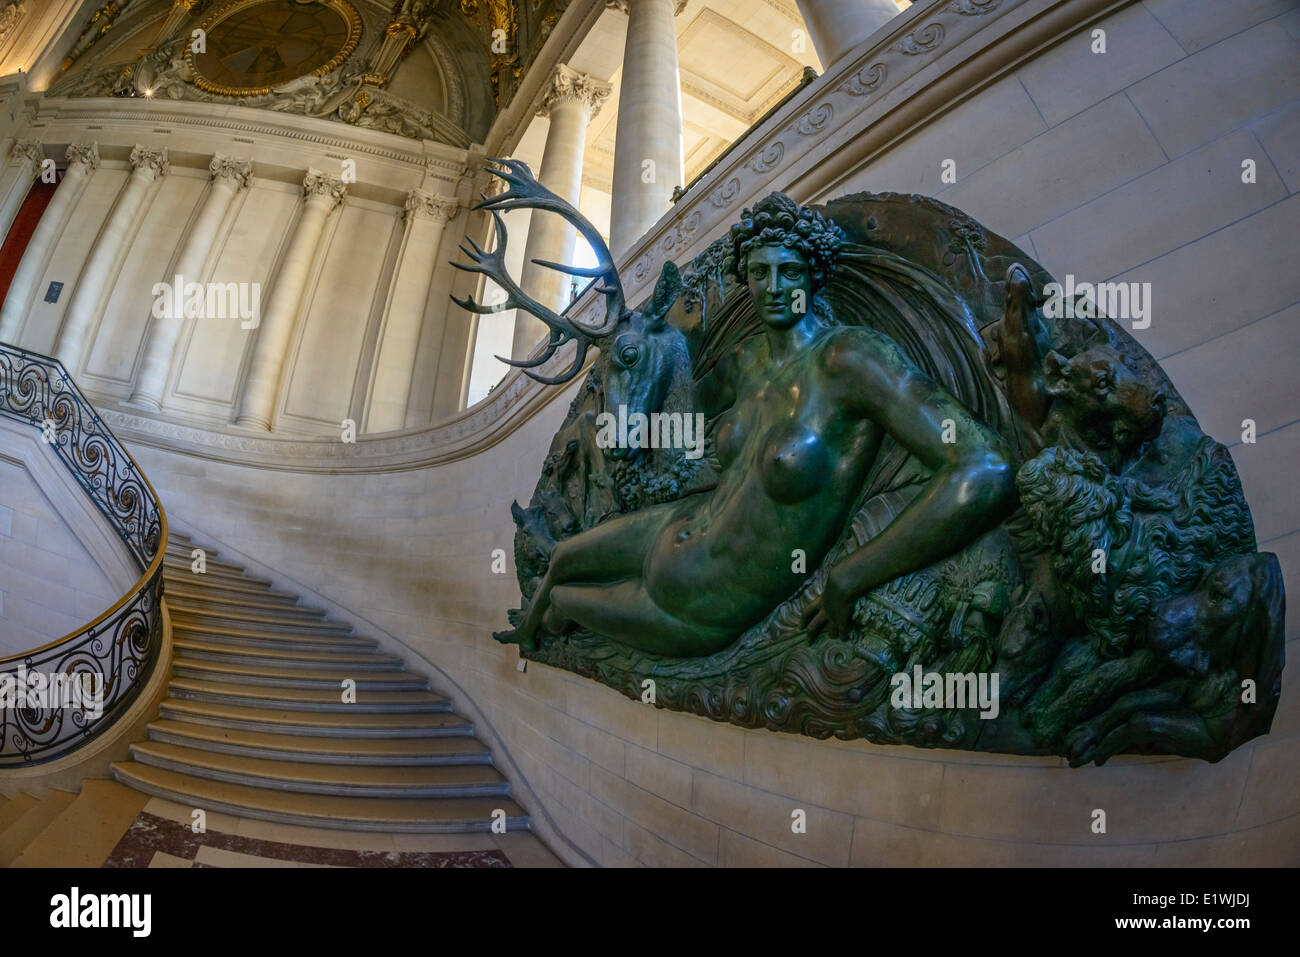 Paris - le 30 août : la sculpture et l'escalier à l'intérieur du Louvre le 30 août 2013 à Paris, France Banque D'Images